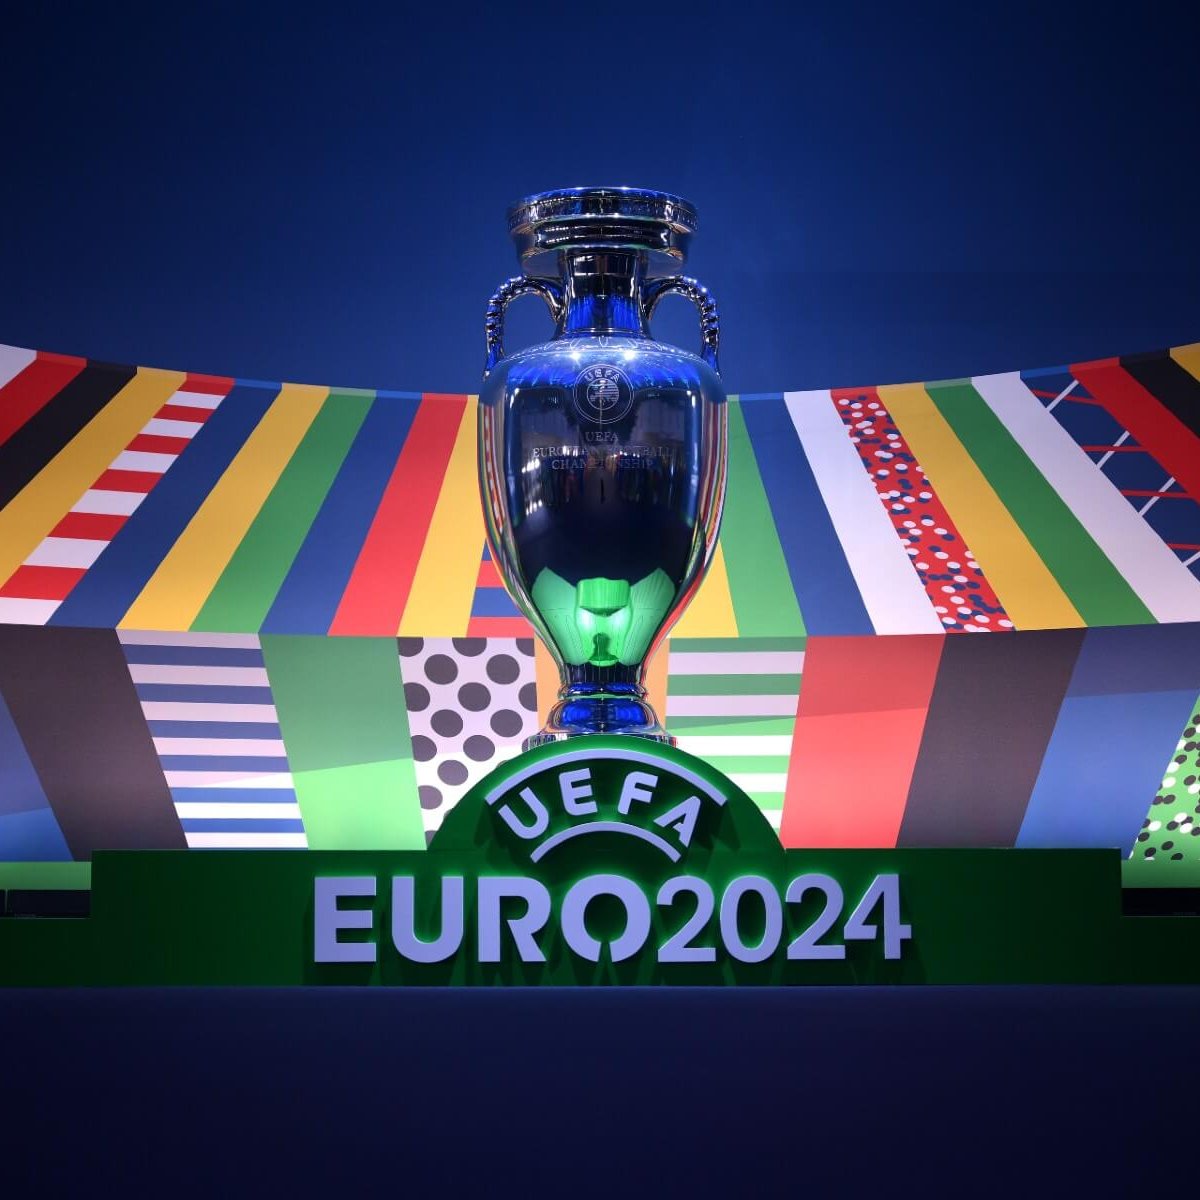 adidas prolonge son partenariat avec l'UEFA jusqu'en 2024